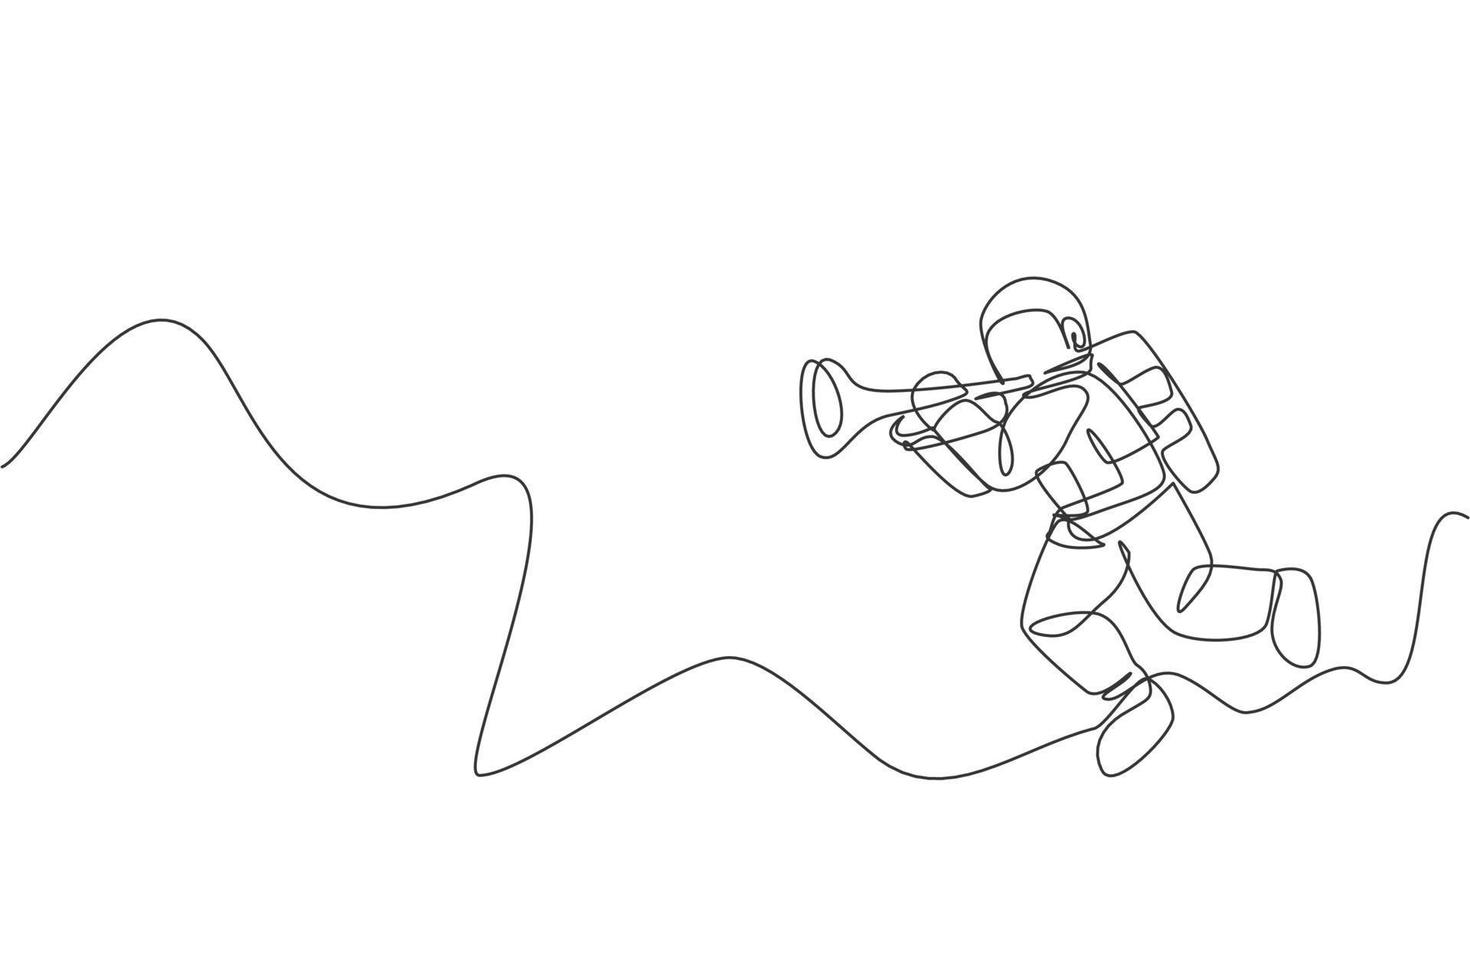 en kontinuerlig linjeteckning av astronaut med rymddräkt som spelar trumpet i galaxuniversum. yttre rymden musikkonsert och orkester koncept. dynamisk enkel linje rita design vektor grafisk illustration